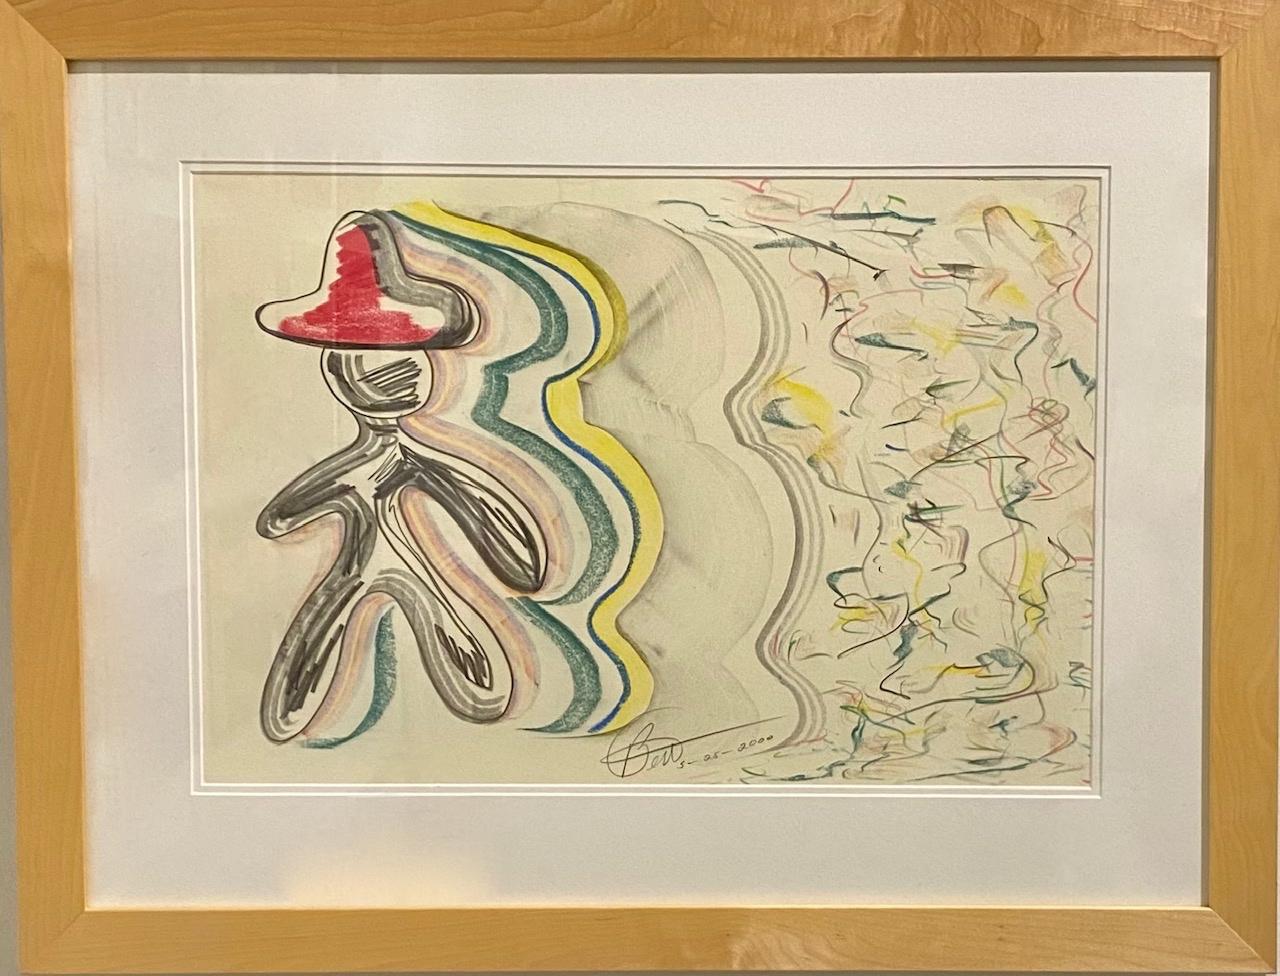 Diese Zeichnung aus Kohle und Pastell ist ein einfacher, aber lebendiger Ausdruck von Longs spielerischer Sensibilität. 

Bert L. Long Jr., Autodidakt, wurde 1940 in Texas geboren, wuchs im historischen Fifth Ward von Houston auf und erhielt seine